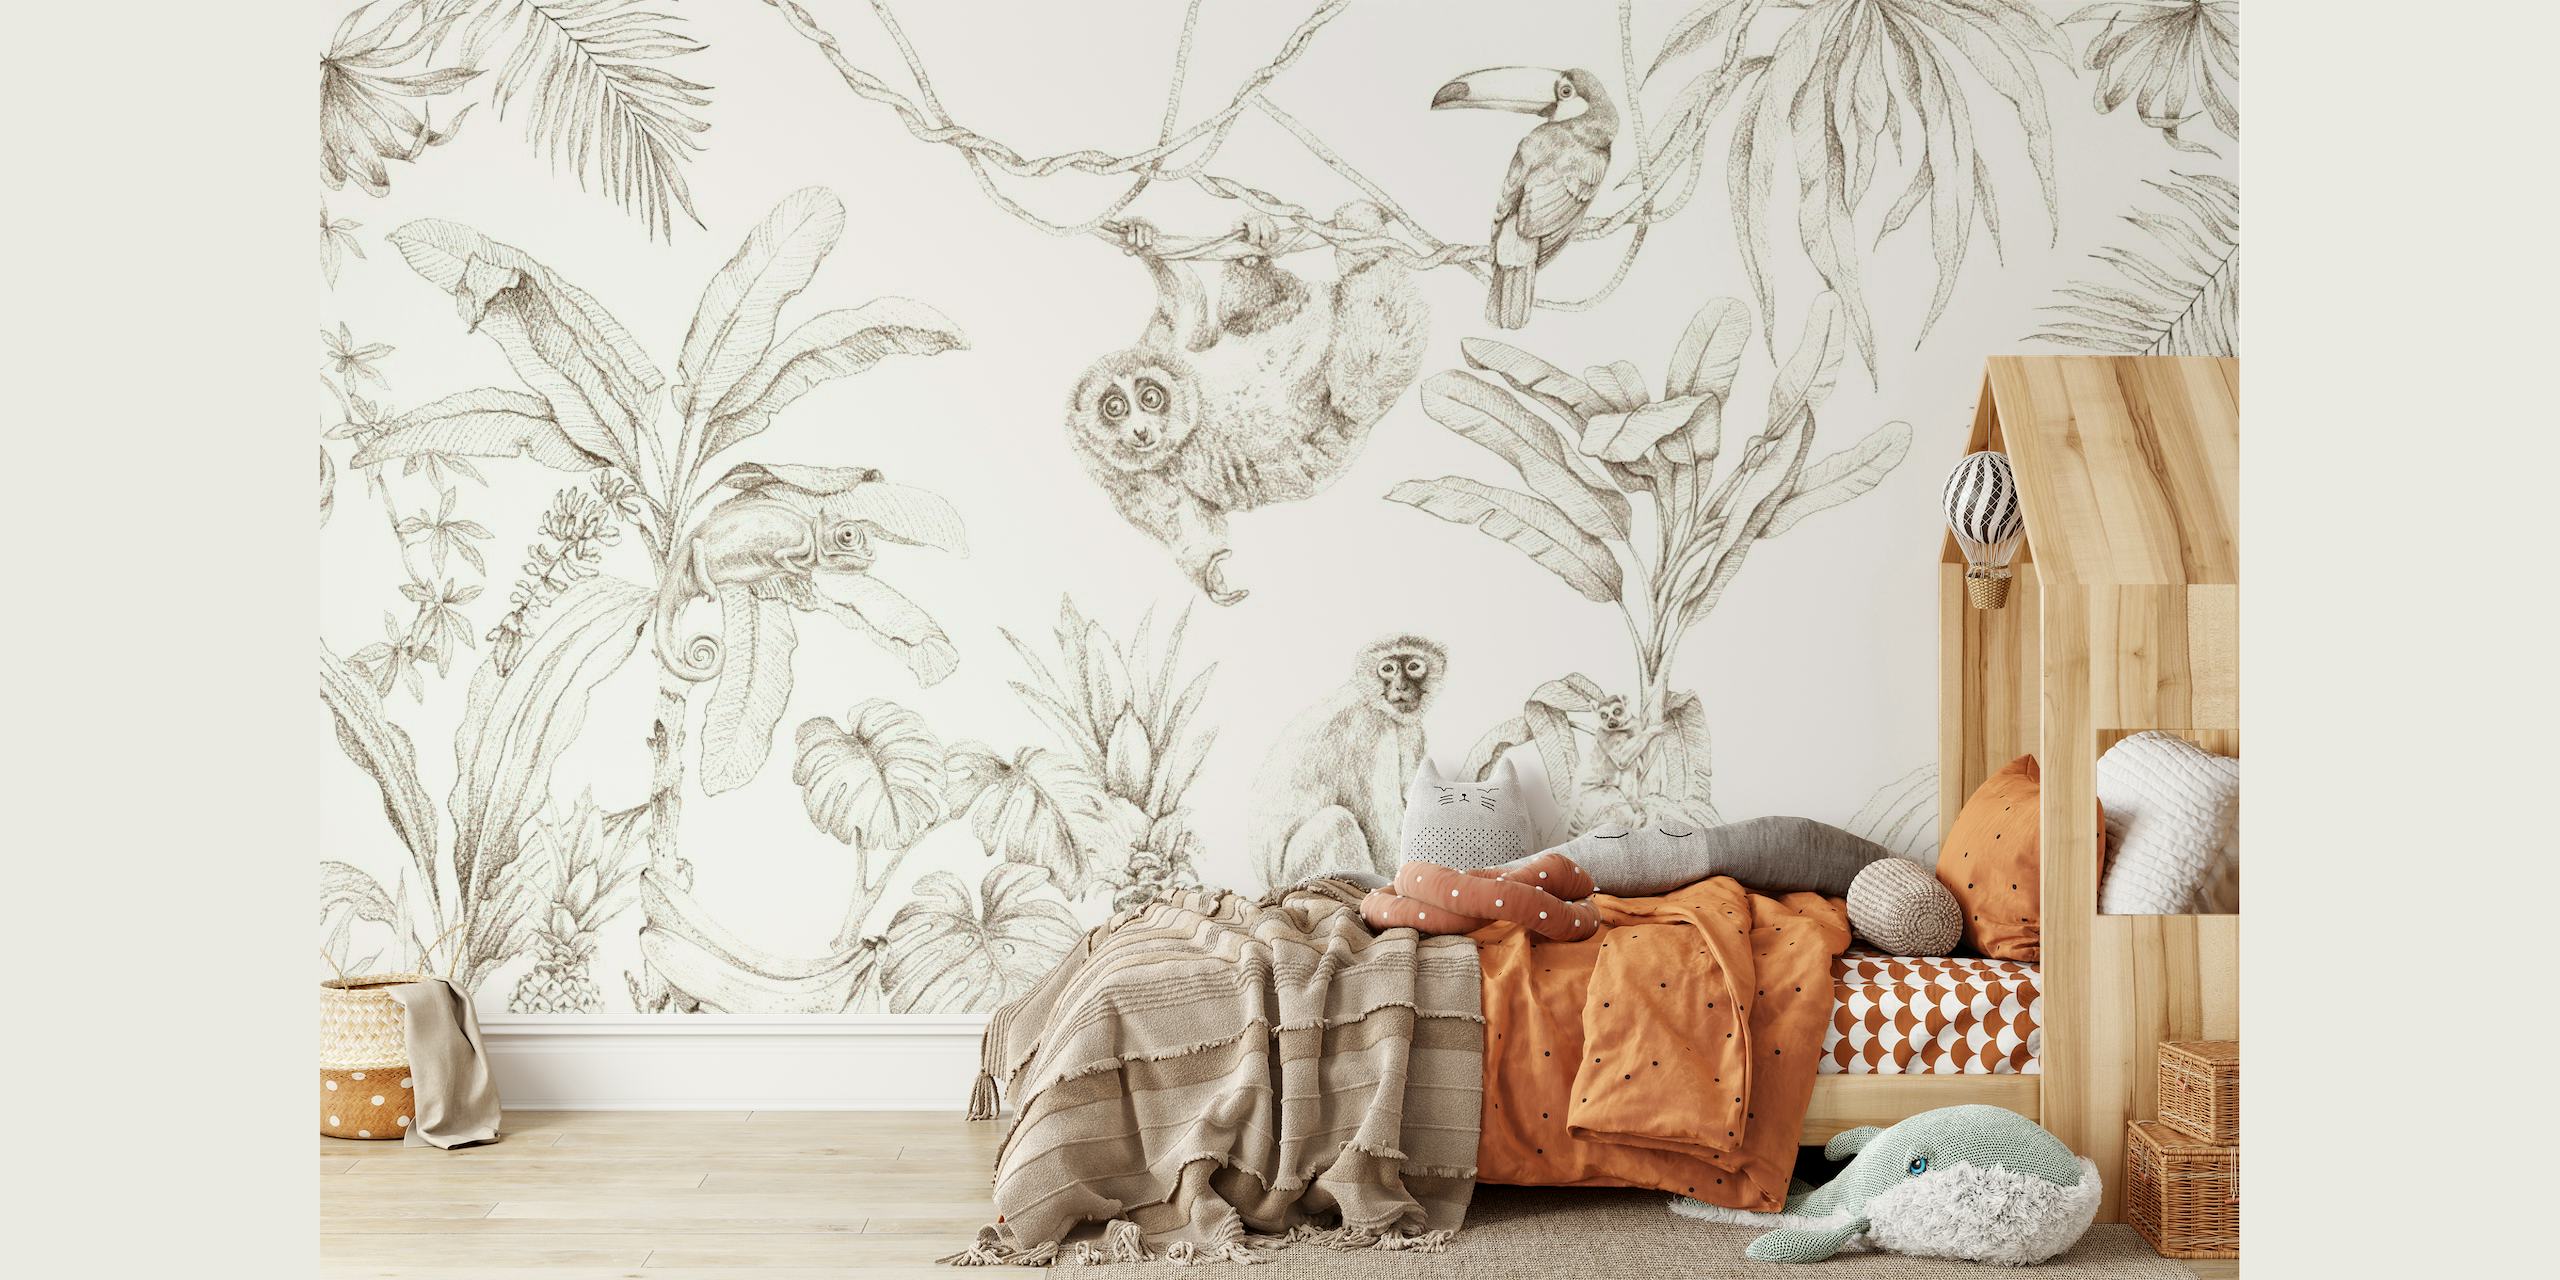 Zidna slika u stilu skice koja prikazuje afričke divlje životinje i tropske biljke